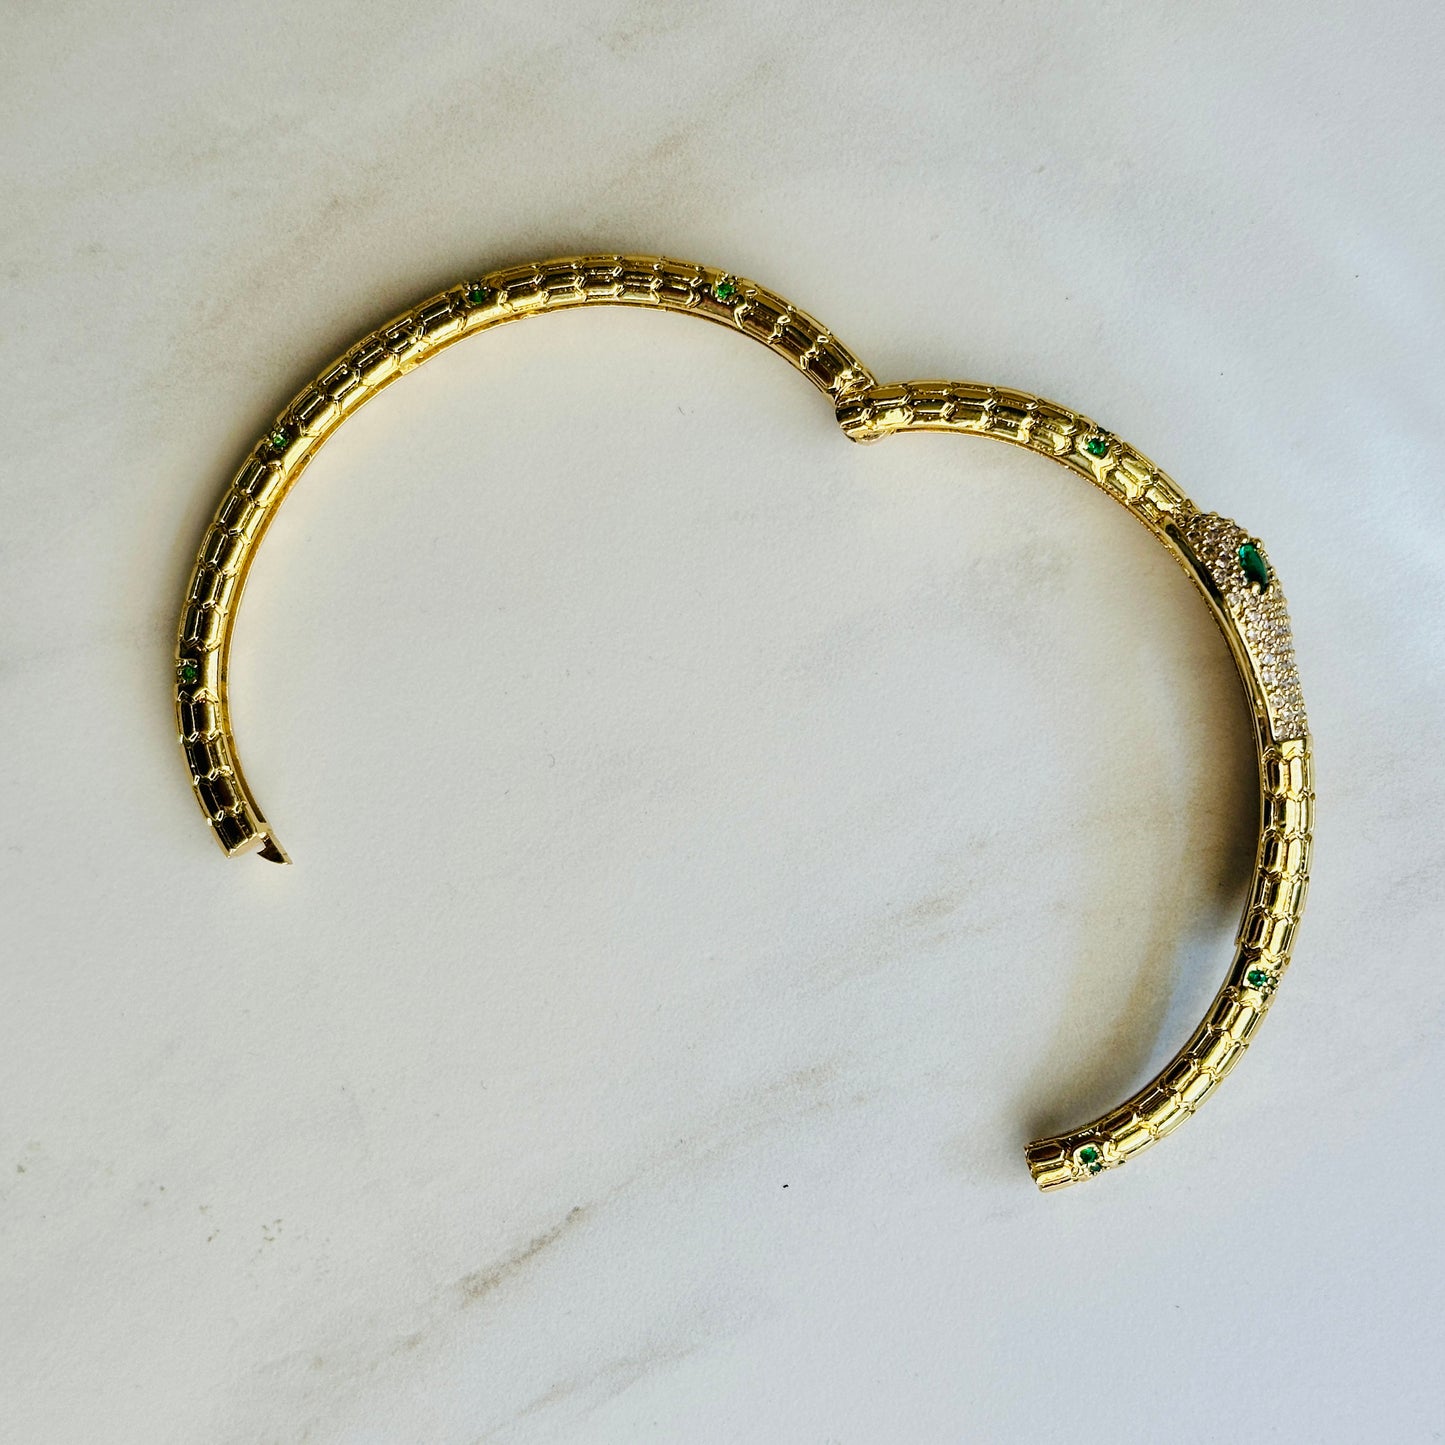 Bracelet - 18KG Gold Filled Snake Bracelets NEW